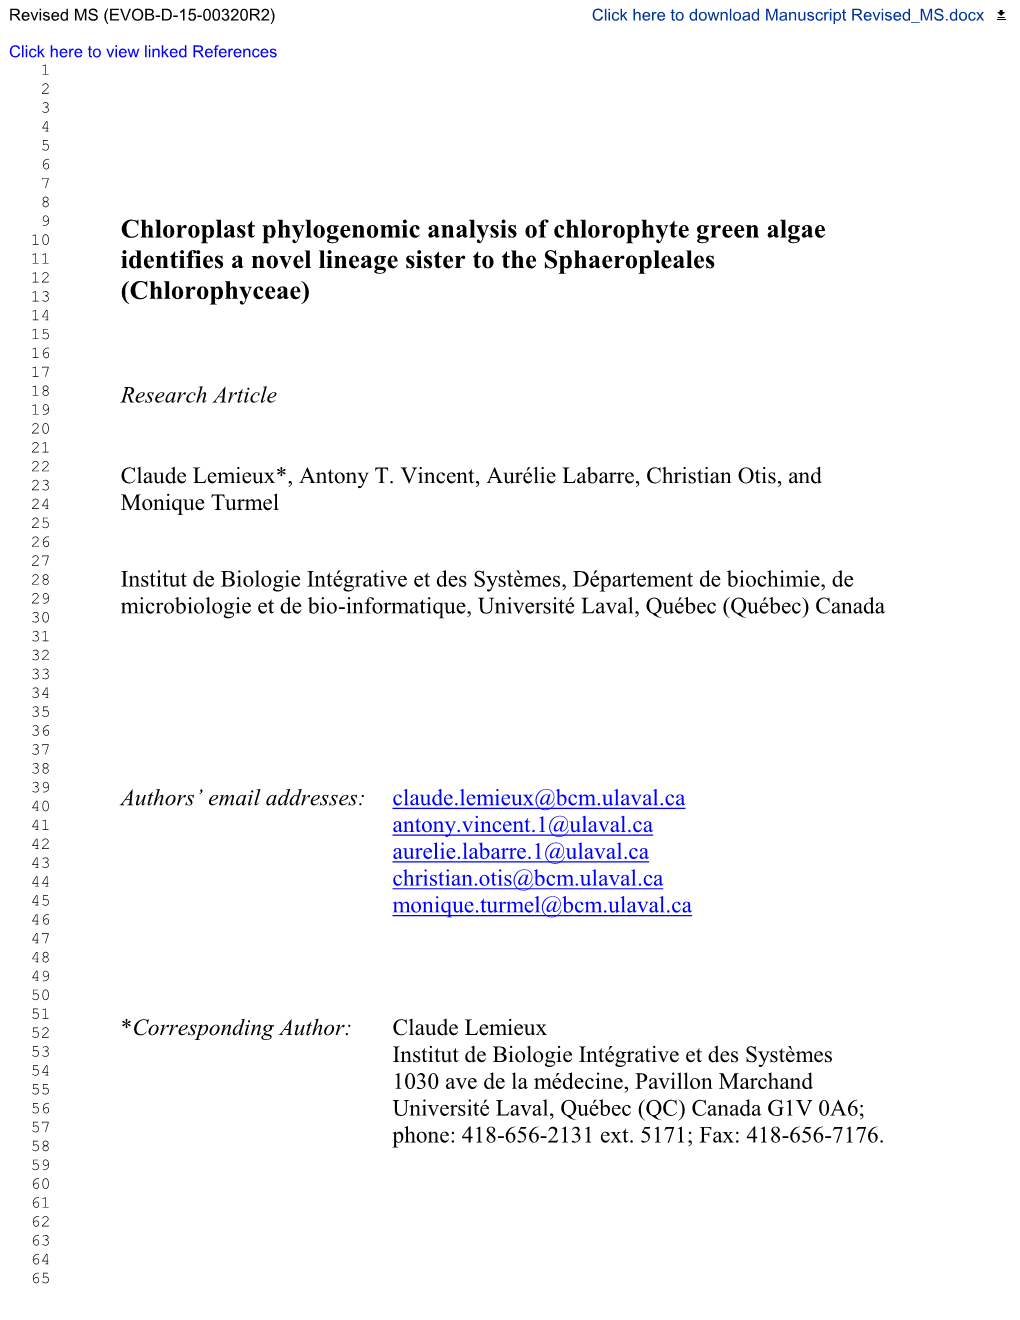 Chloroplast Phylogenomic Analysis of Chlorophyte Green